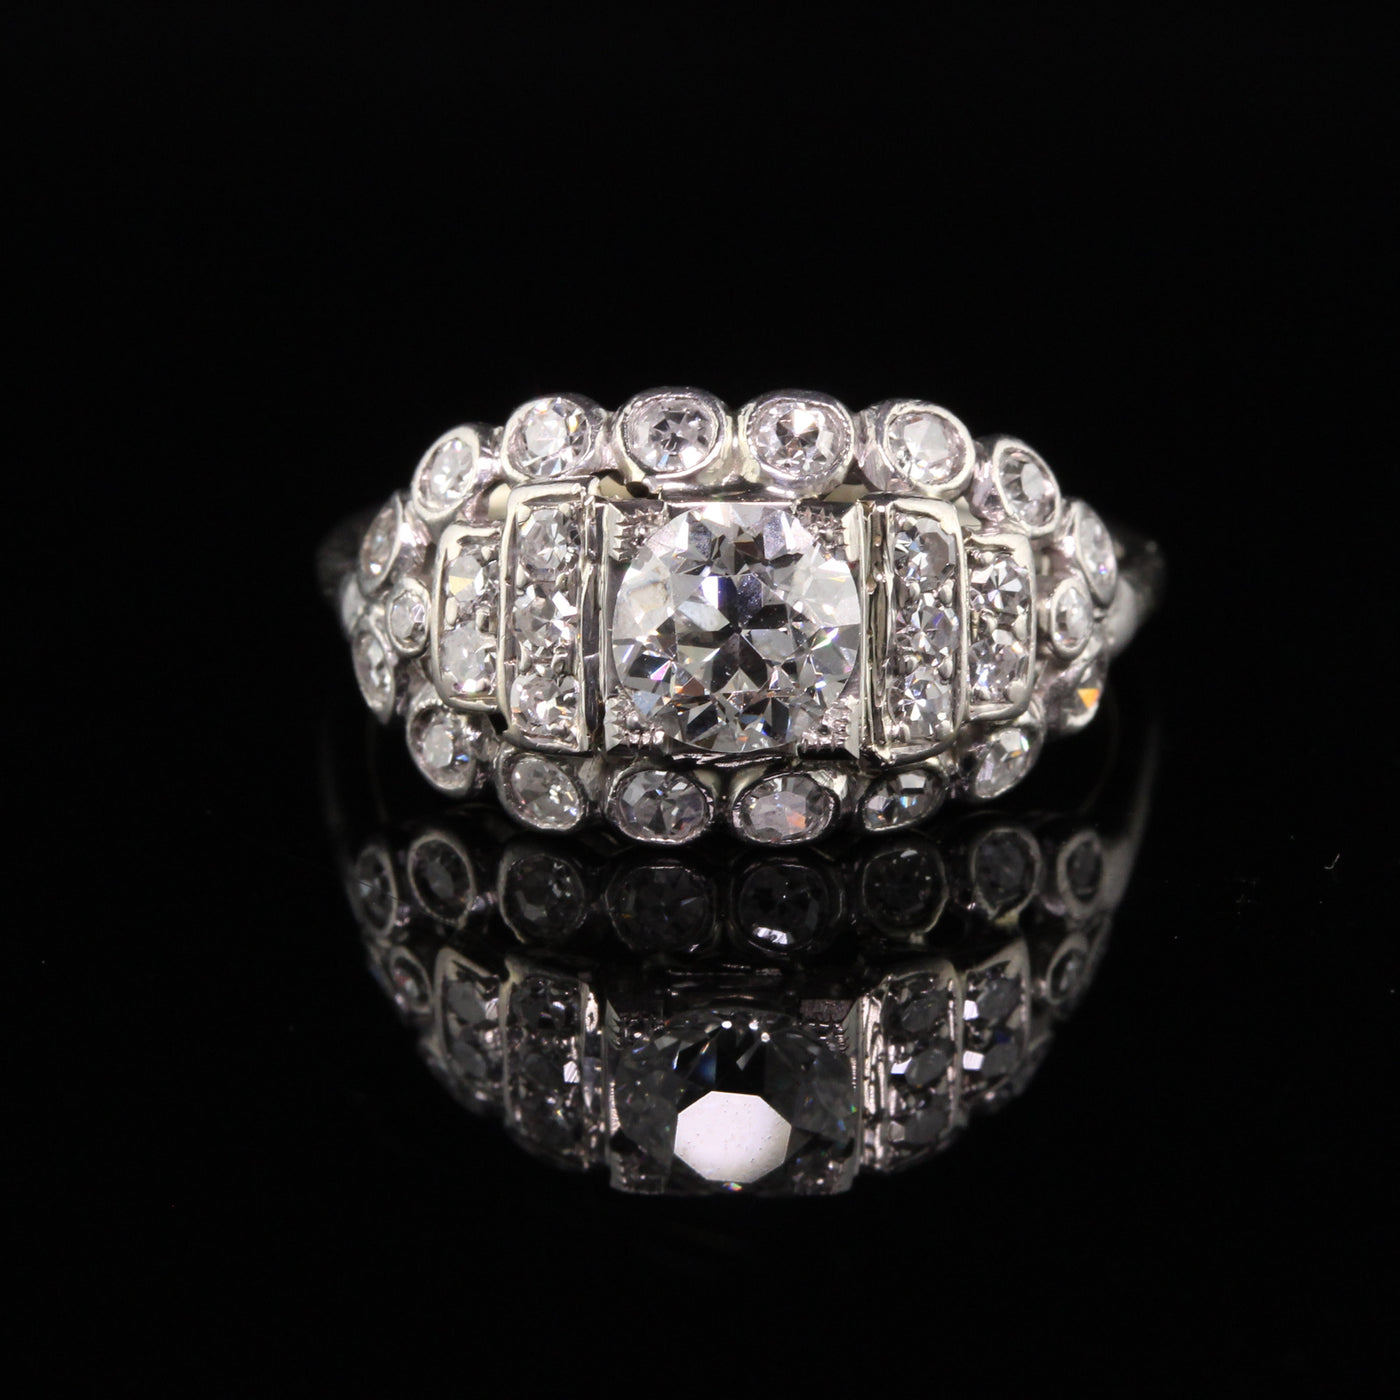 Antique Art Deco Platinum Old European Cut Diamond Engagement Ring